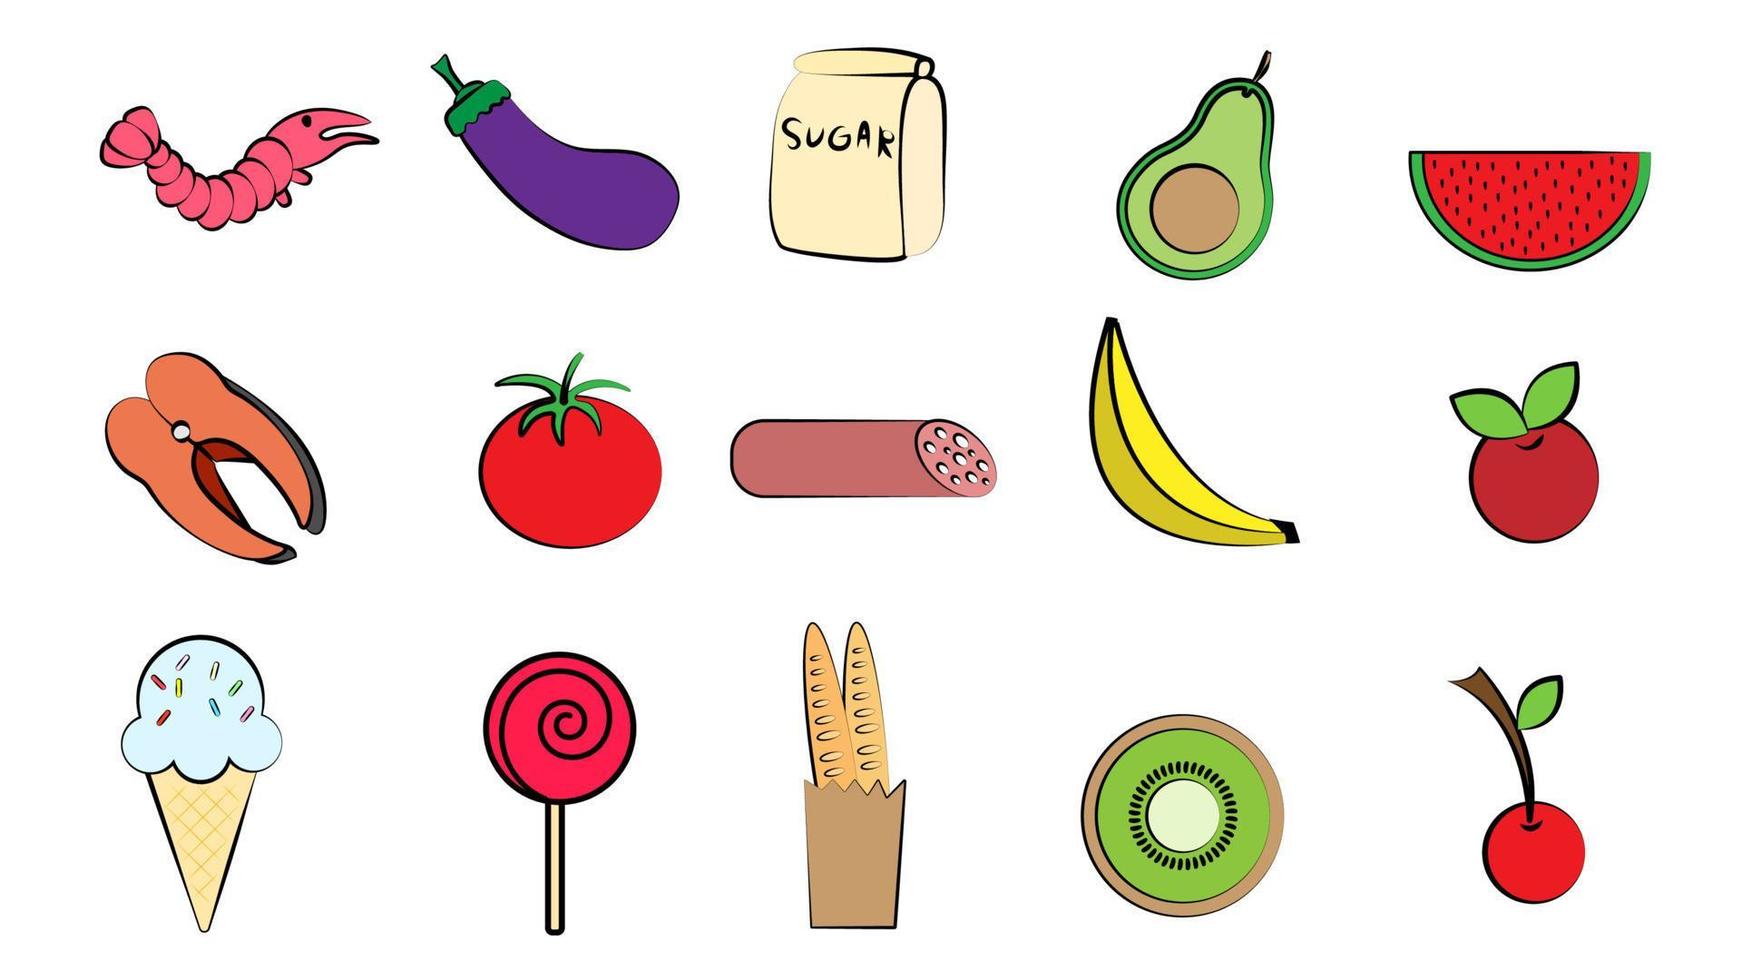 Satz von 15 Symbolen köstlicher Speisen und Snacks für ein Restaurant-Bar-Café auf weißem Hintergrund Garnelen, Fisch, Auberginen, Tomaten, Wurst, Banane, Eis, Wassermelone, Kiwi vektor